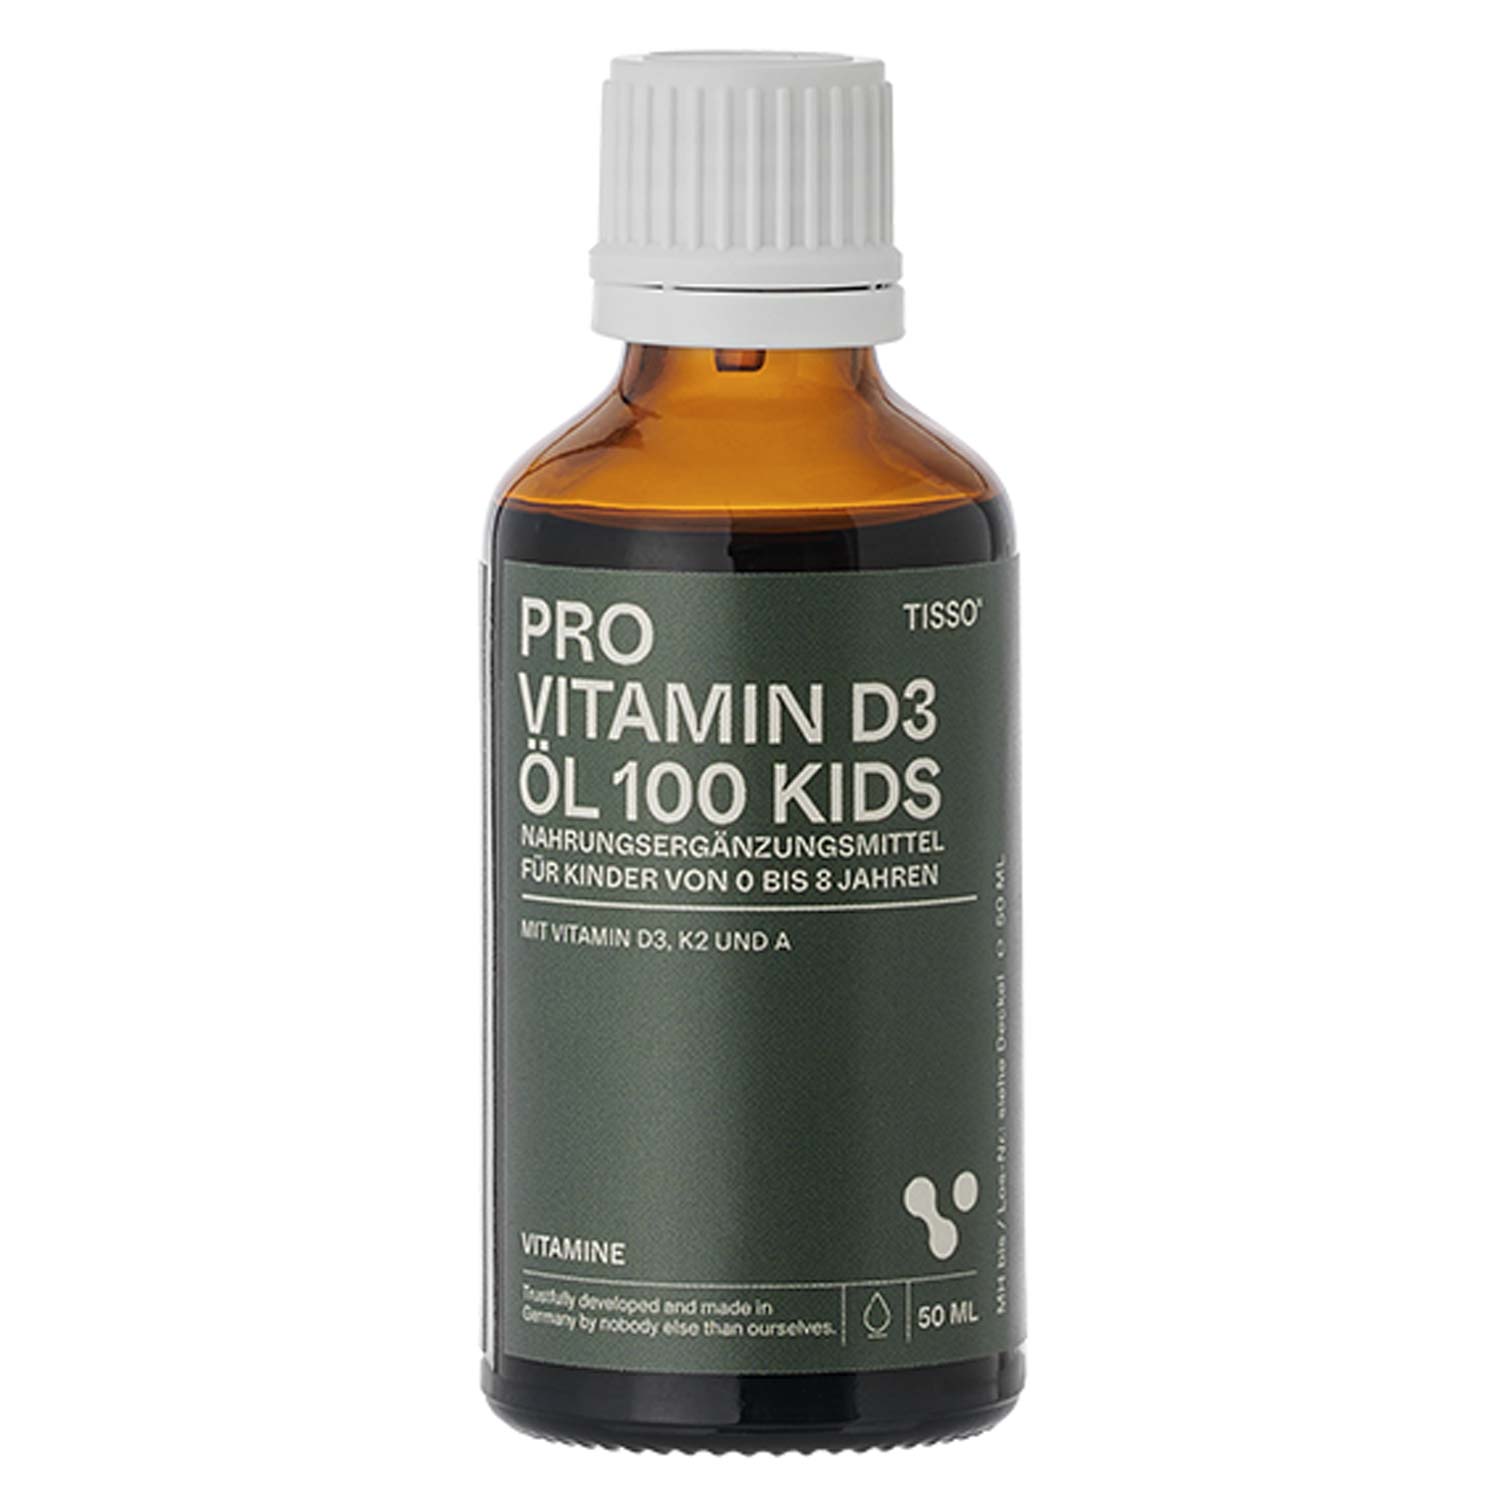 Tisso Pro Vitamin D3 Öl 100 kids - 50ml